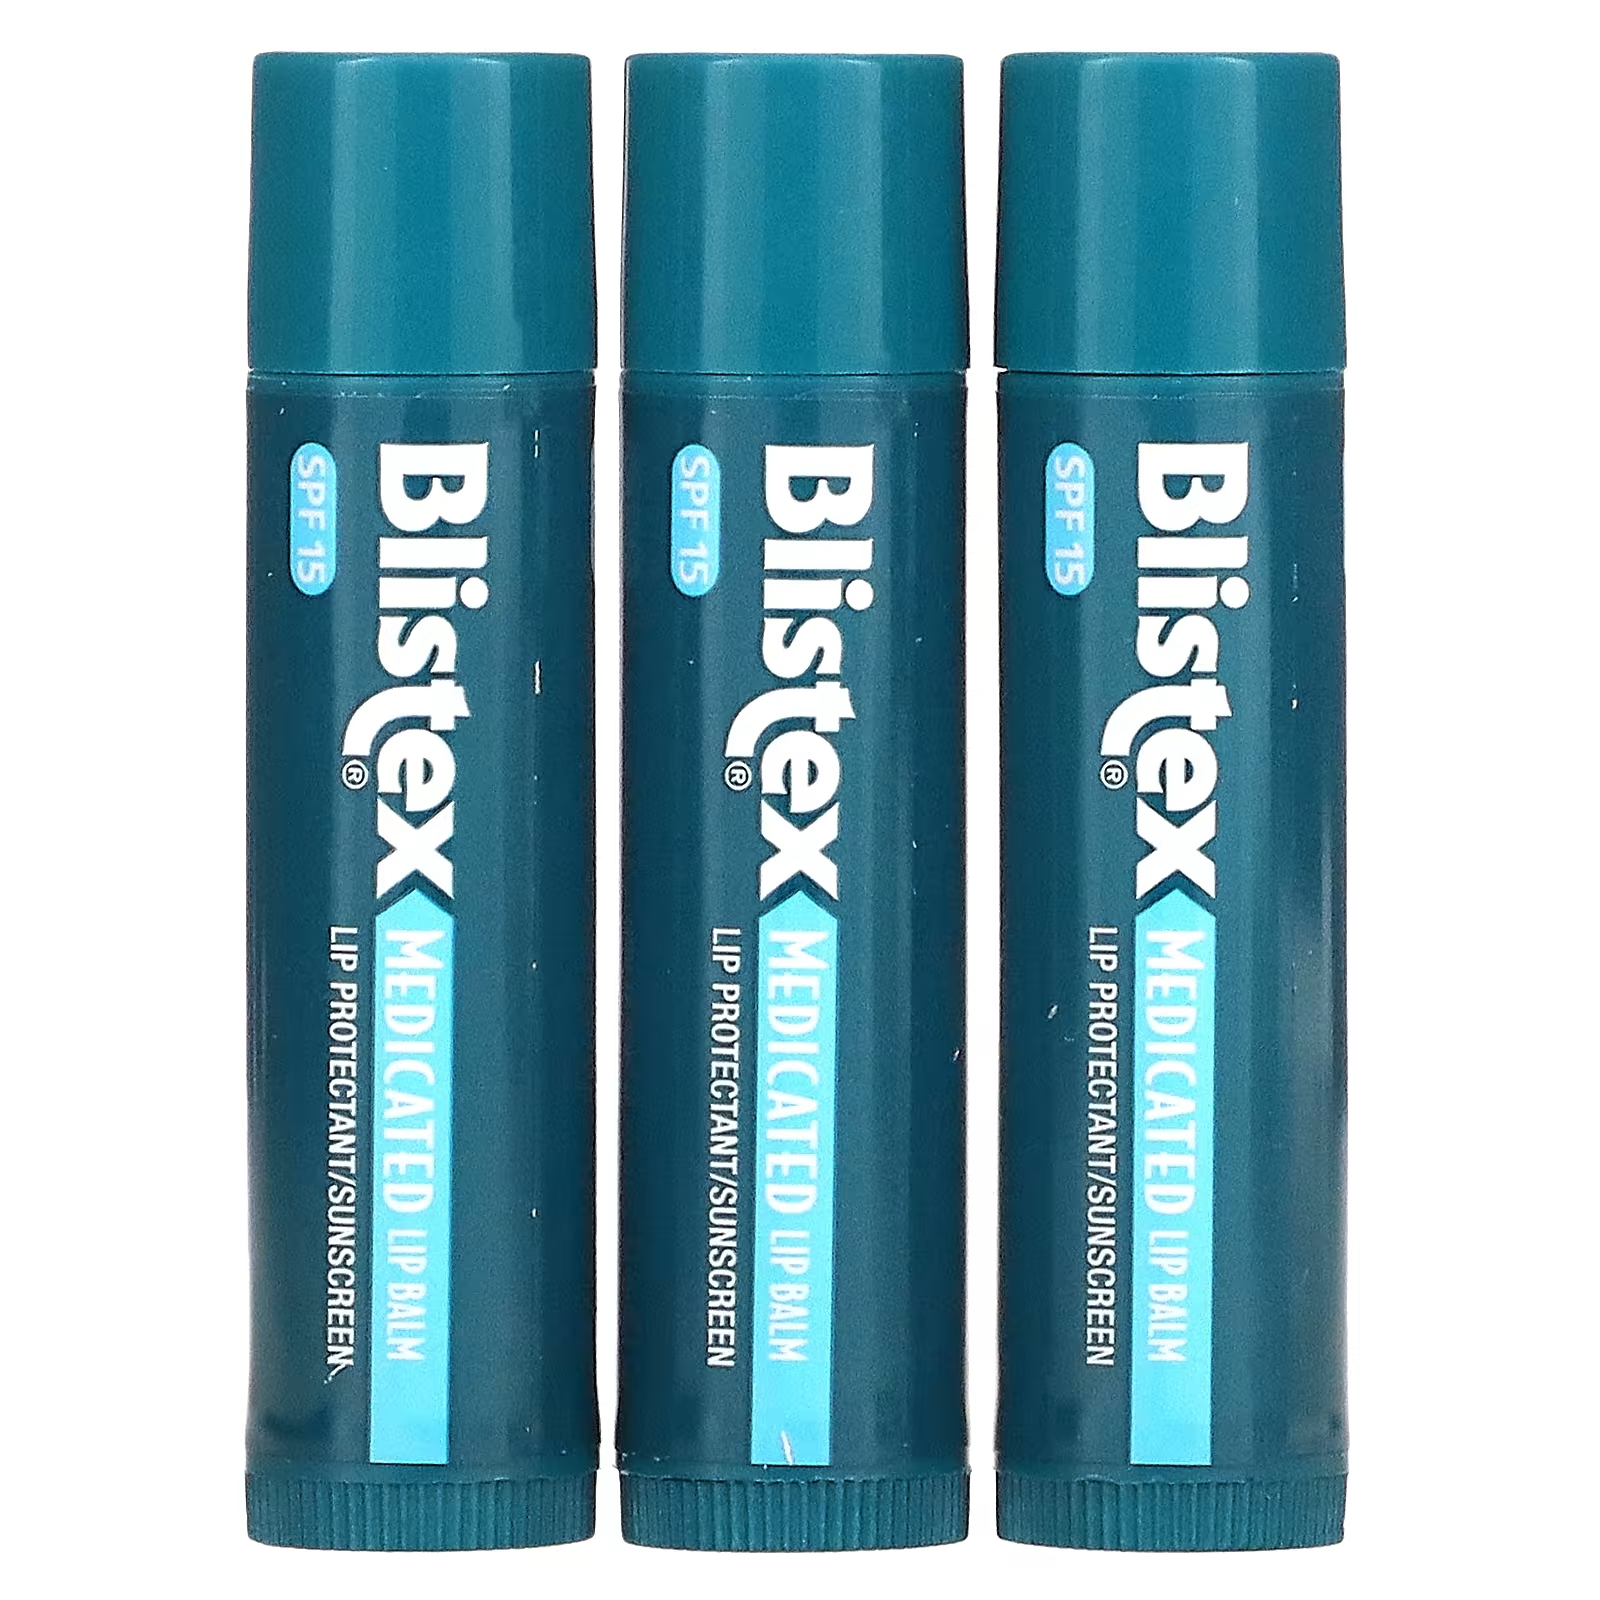 Blistex Лекарственное средство для защиты губ/солнцезащитный крем SPF 15, оригинальная упаковка из 3 бальзамов по 0,15 унции (4,25 г) каждая